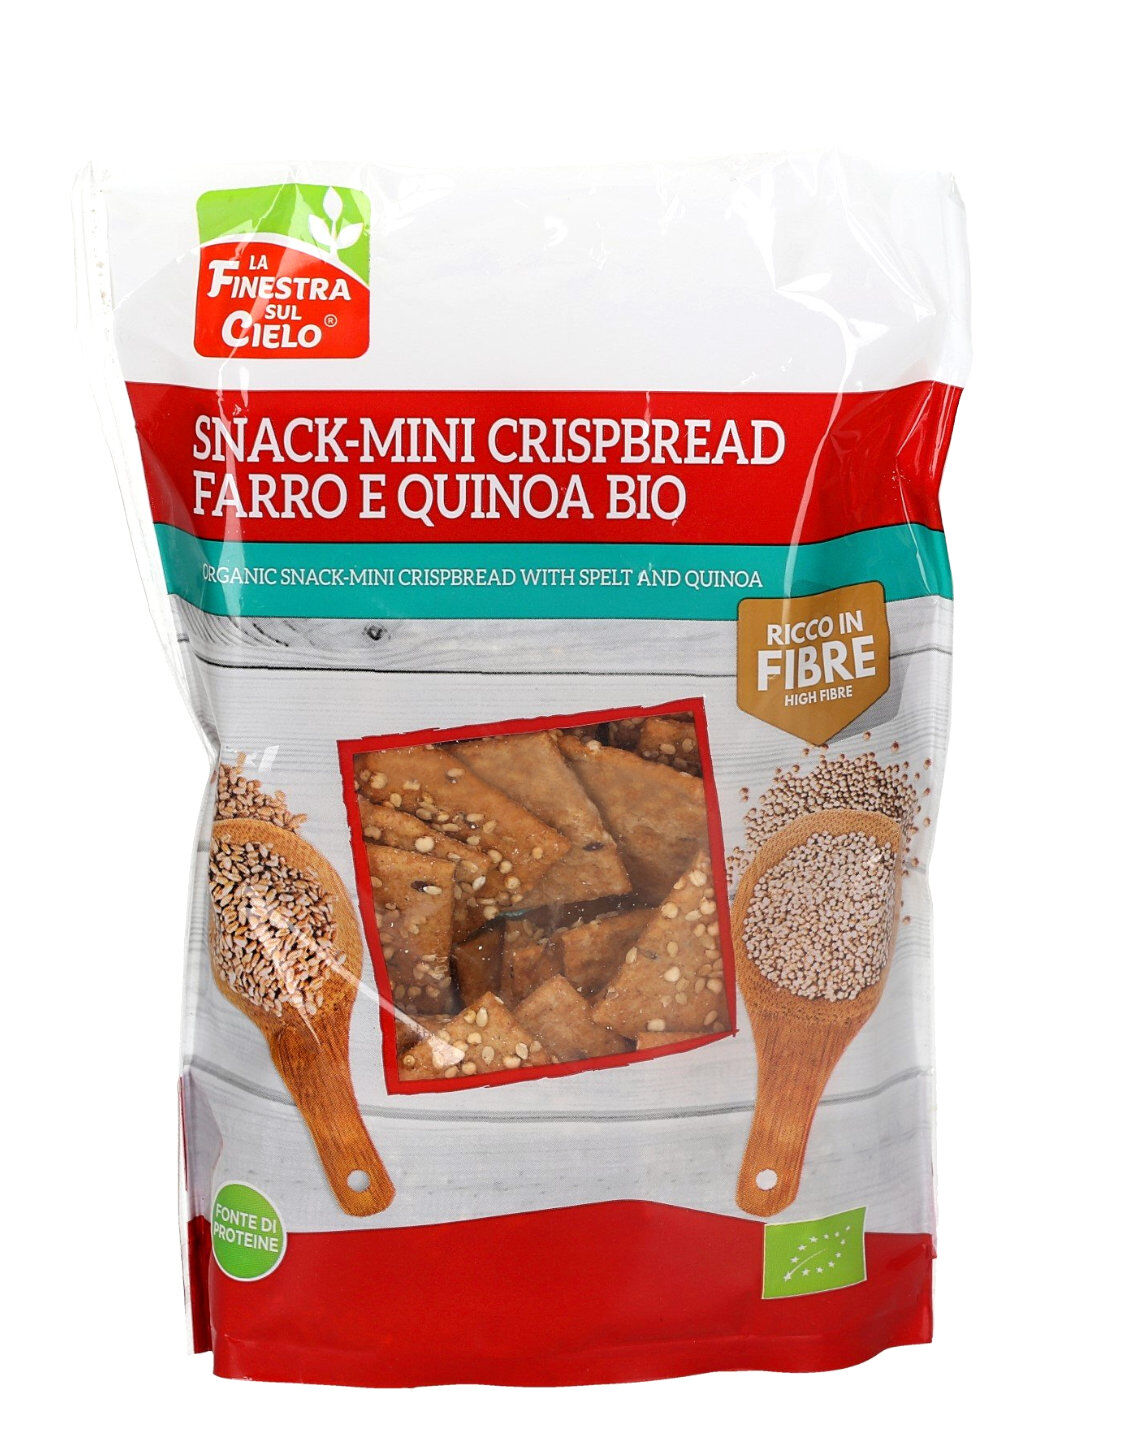 LA FINESTRA SUL CIELO Snack-Mini Crispbread Farro E Quinoa Bio 110 Grammi